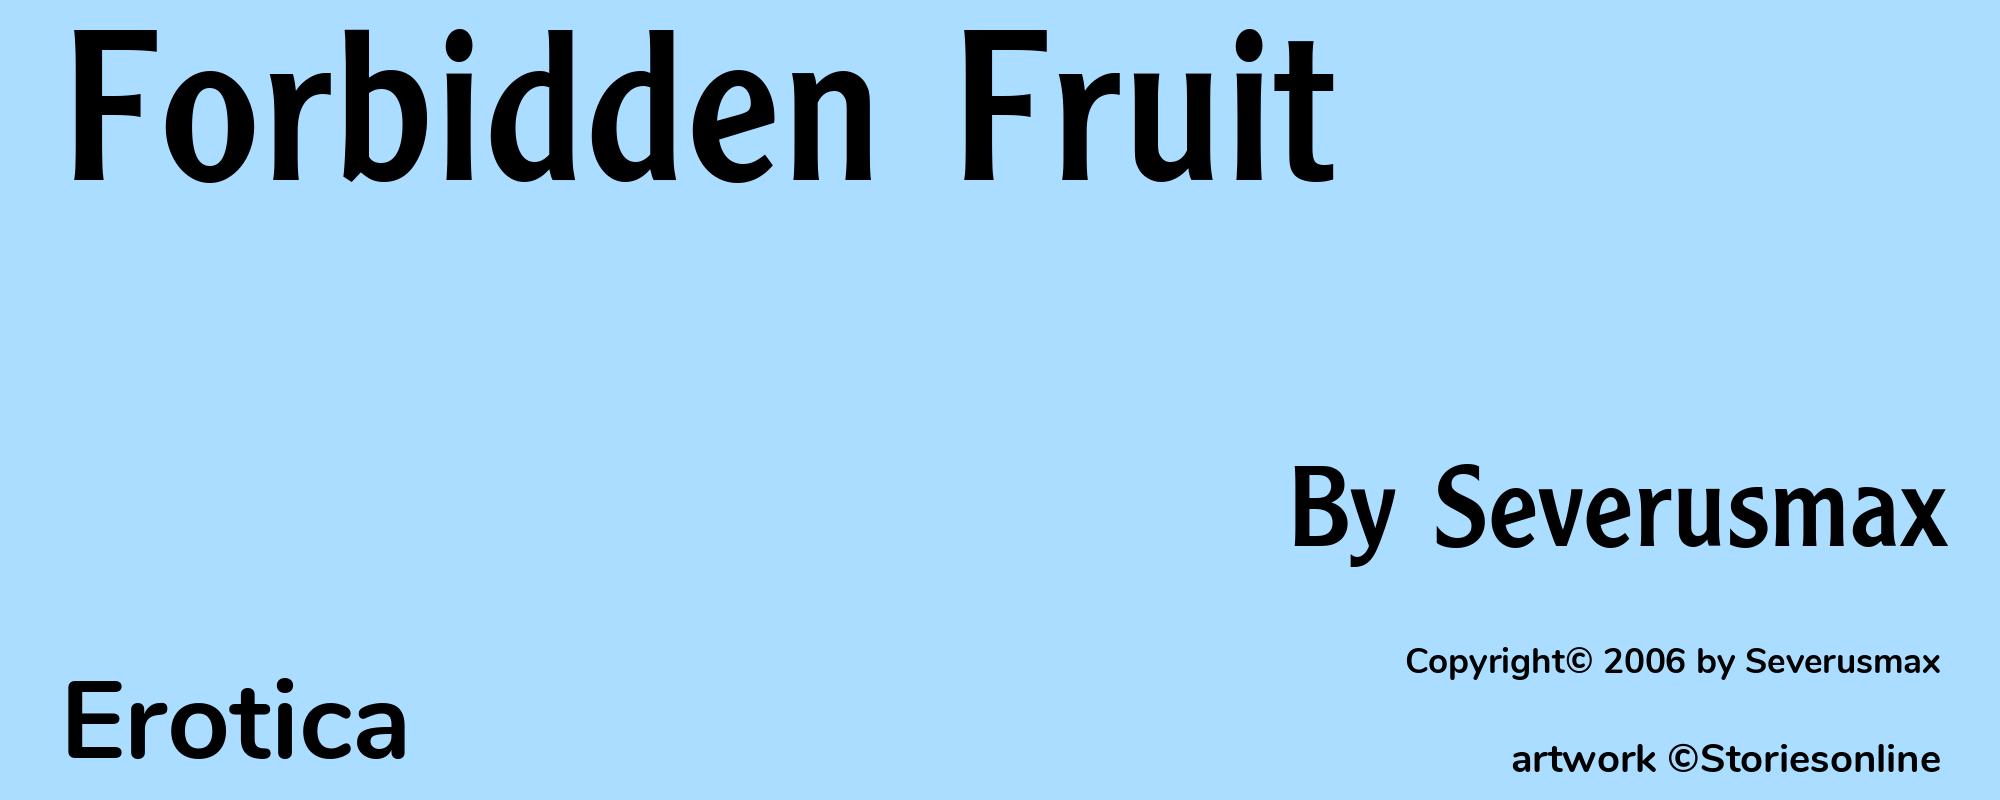 Forbidden Fruit - Cover